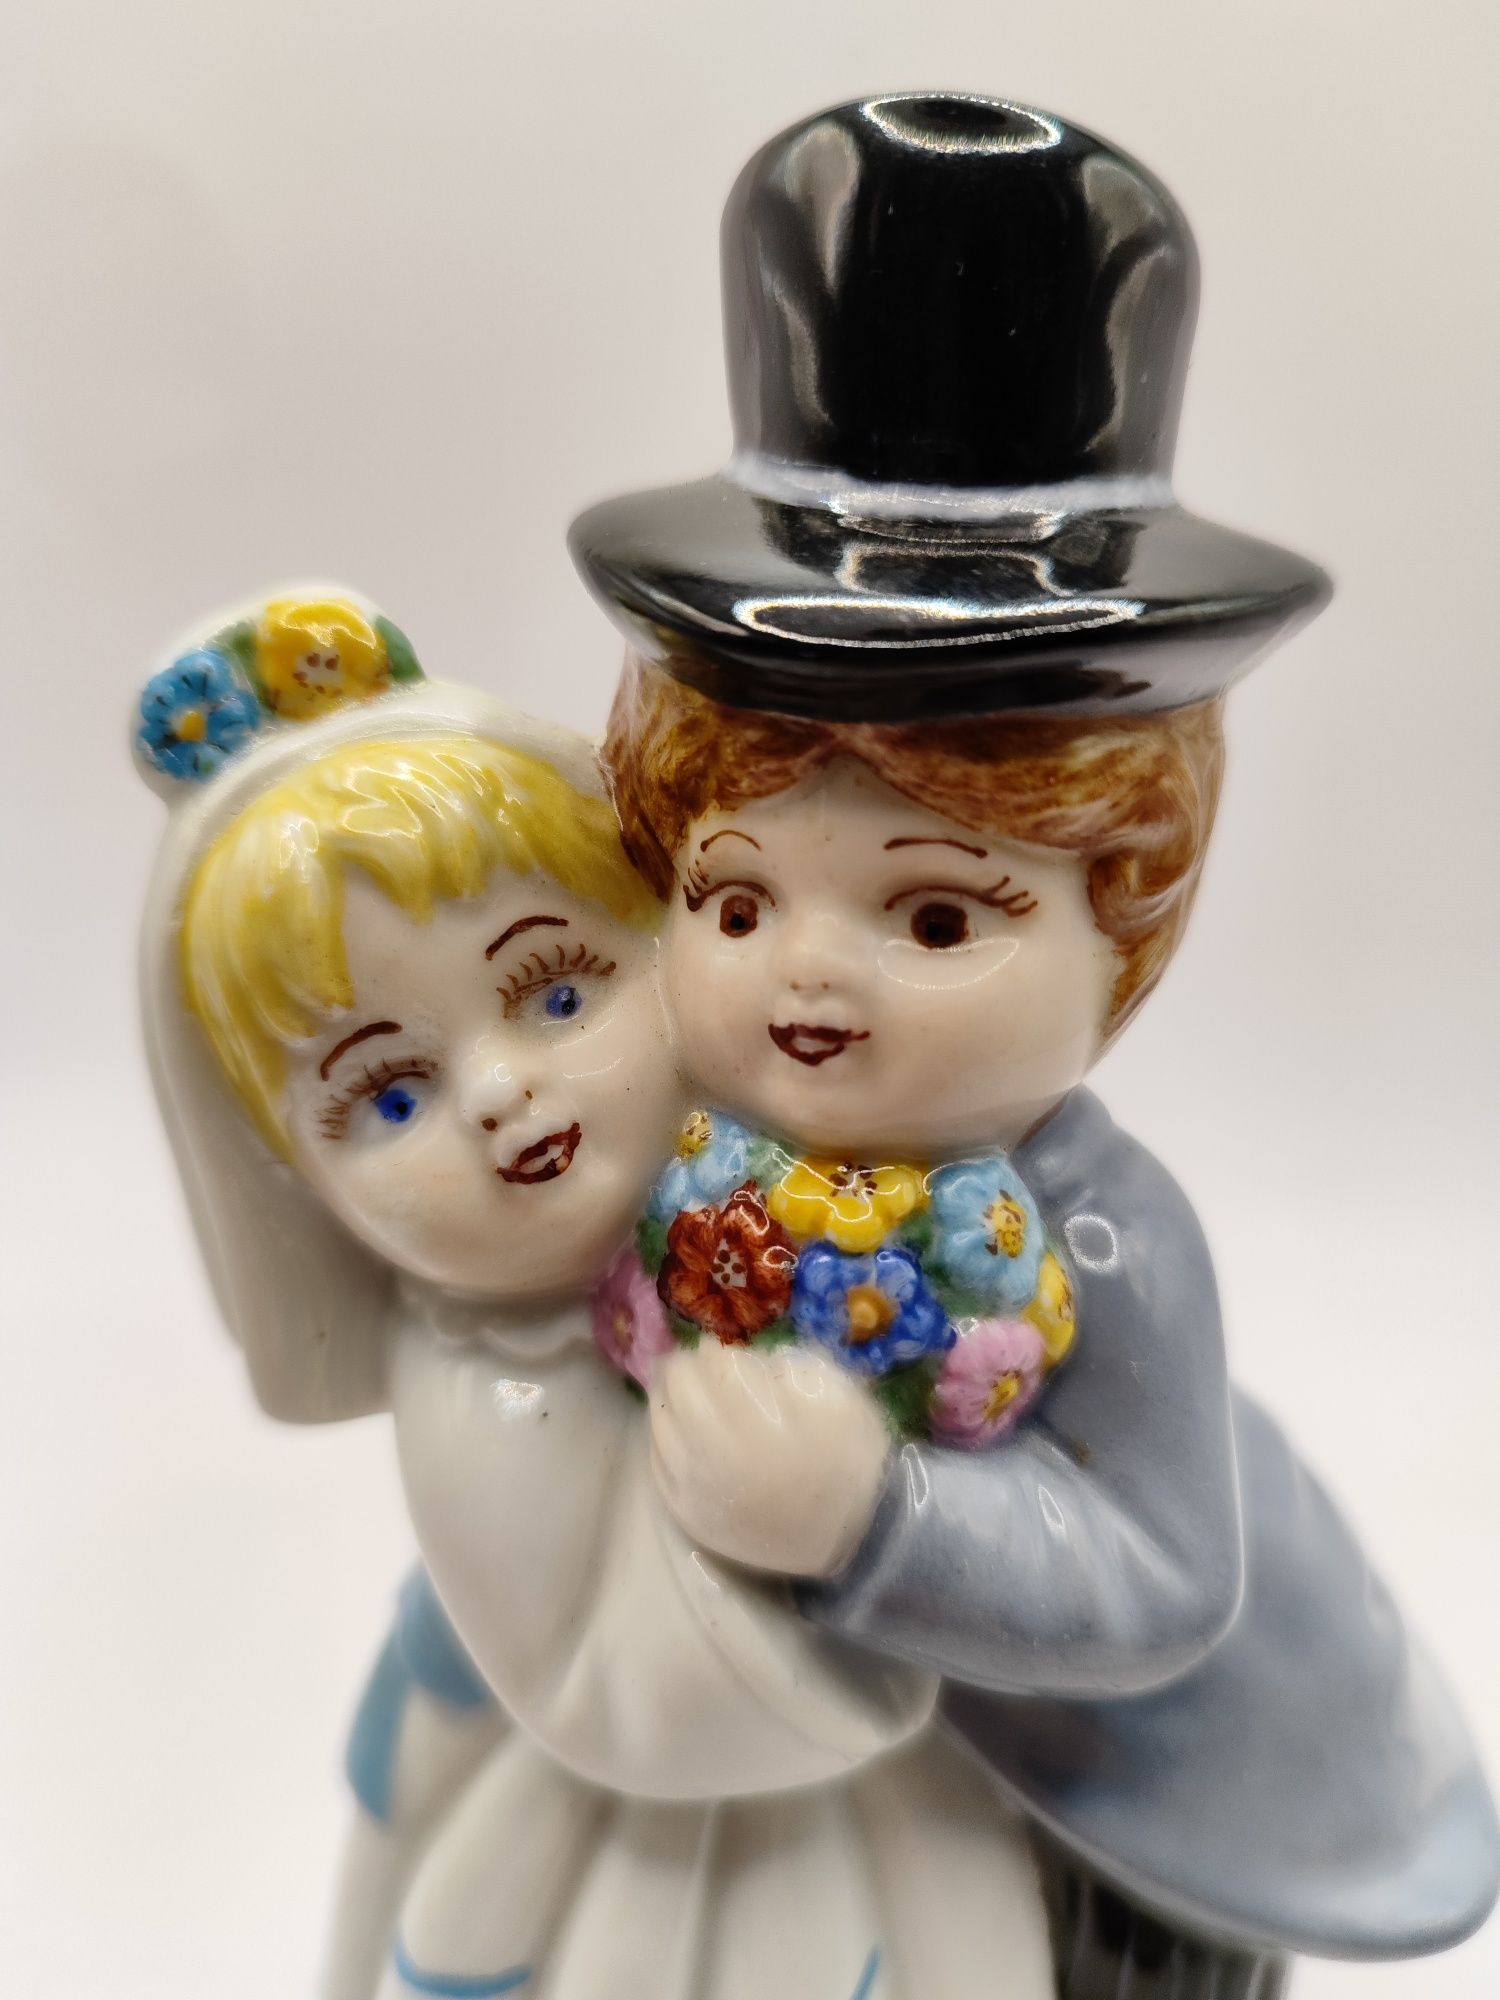 Figurka porcelanowa sygnowana nowożeńcy ślub wesele para prezent